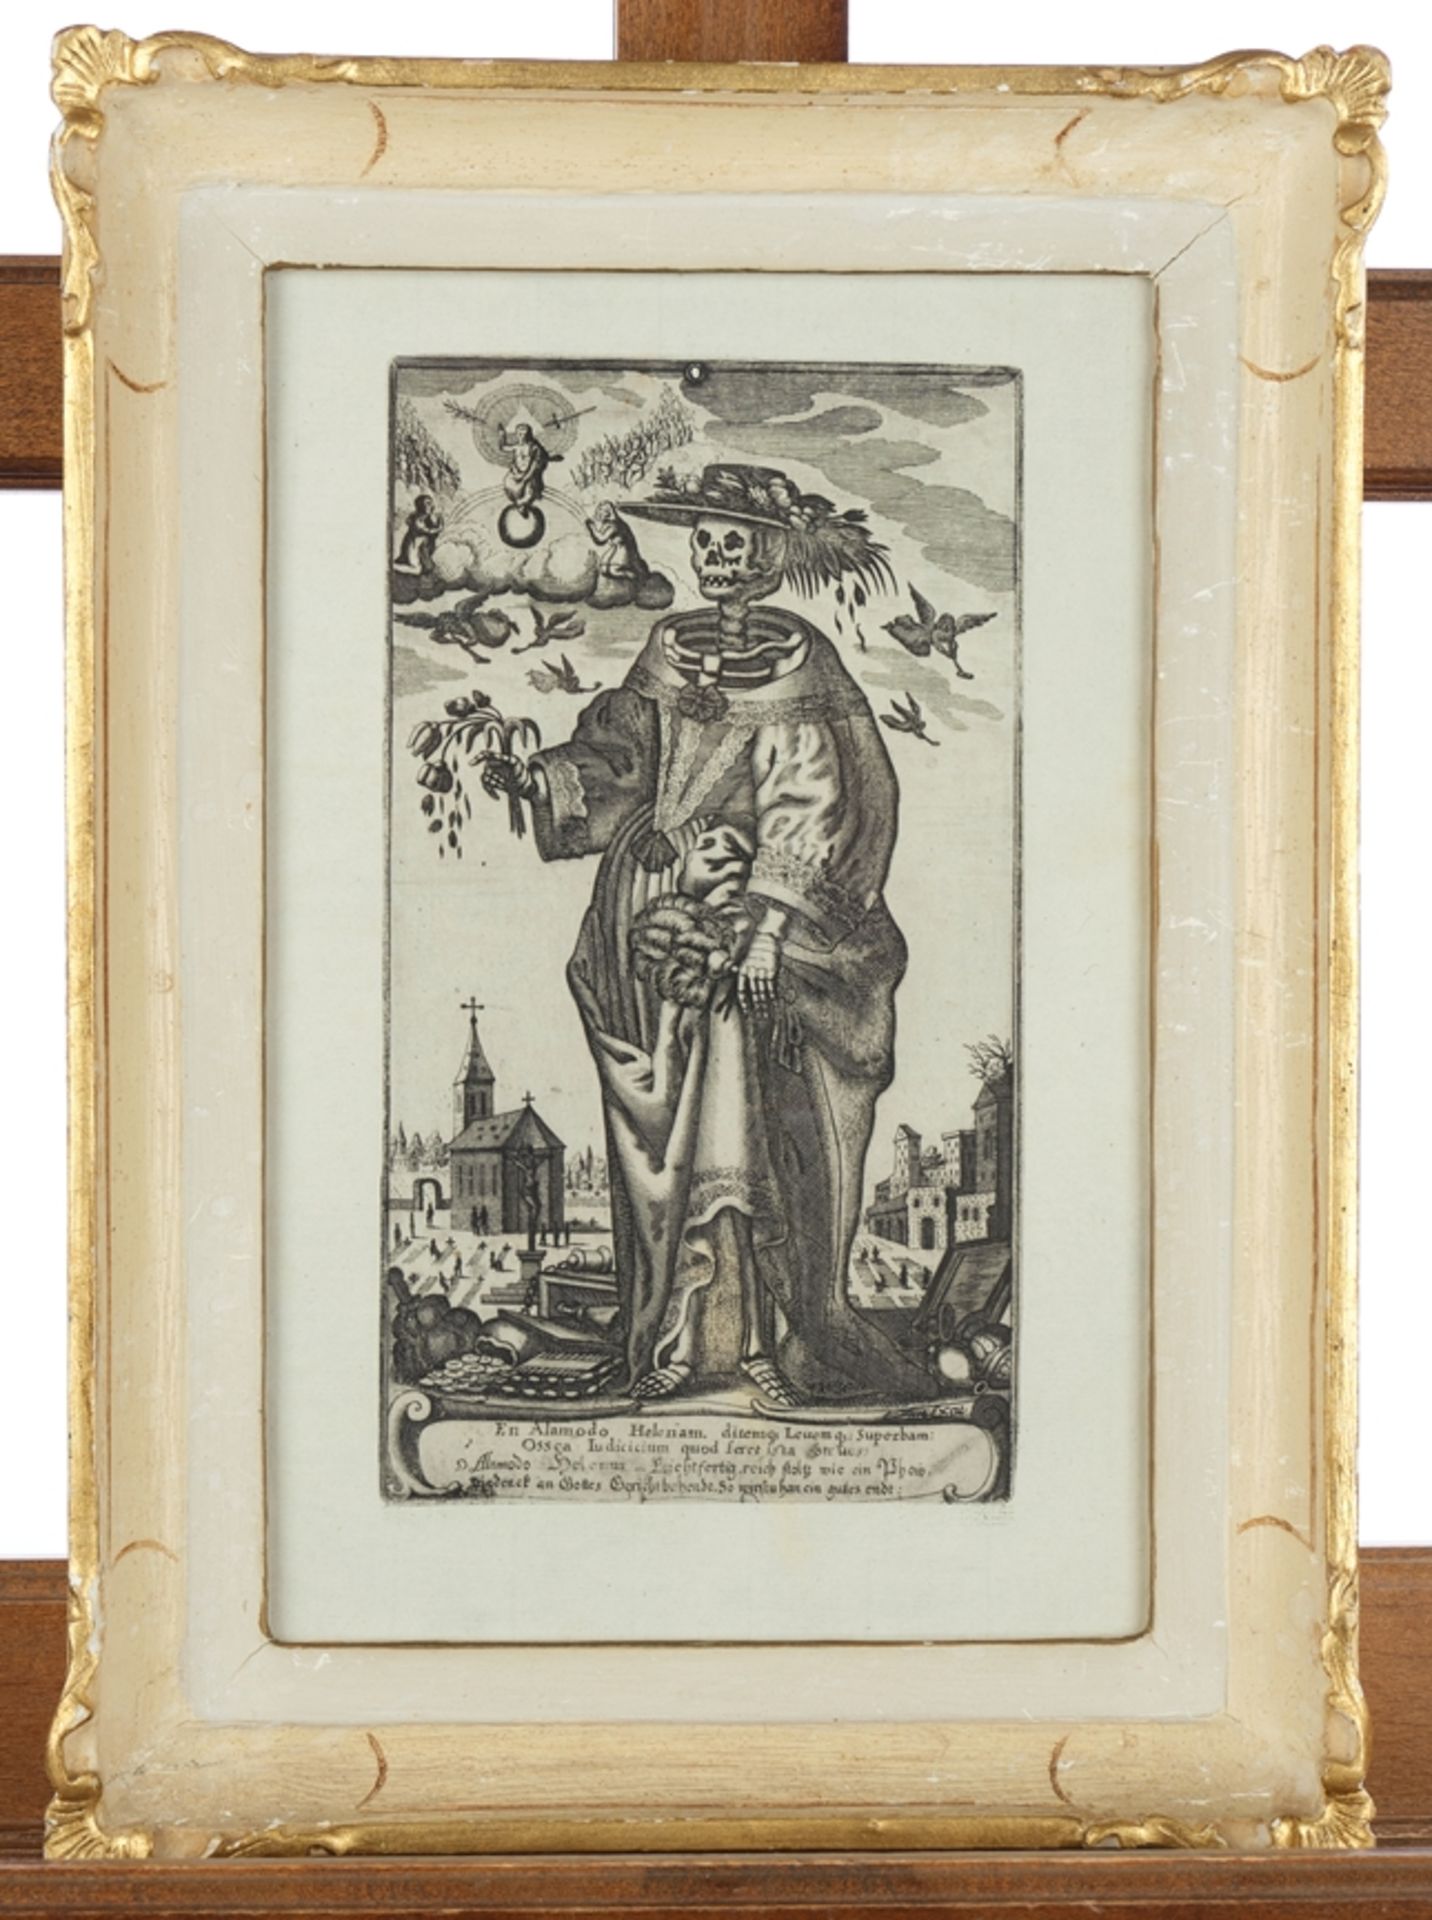 Altzenbach, Gerhard (vor 1590 - nach 1672, Besitzer einer bedeutenden Kupferstecherei in Köln), - Image 2 of 3